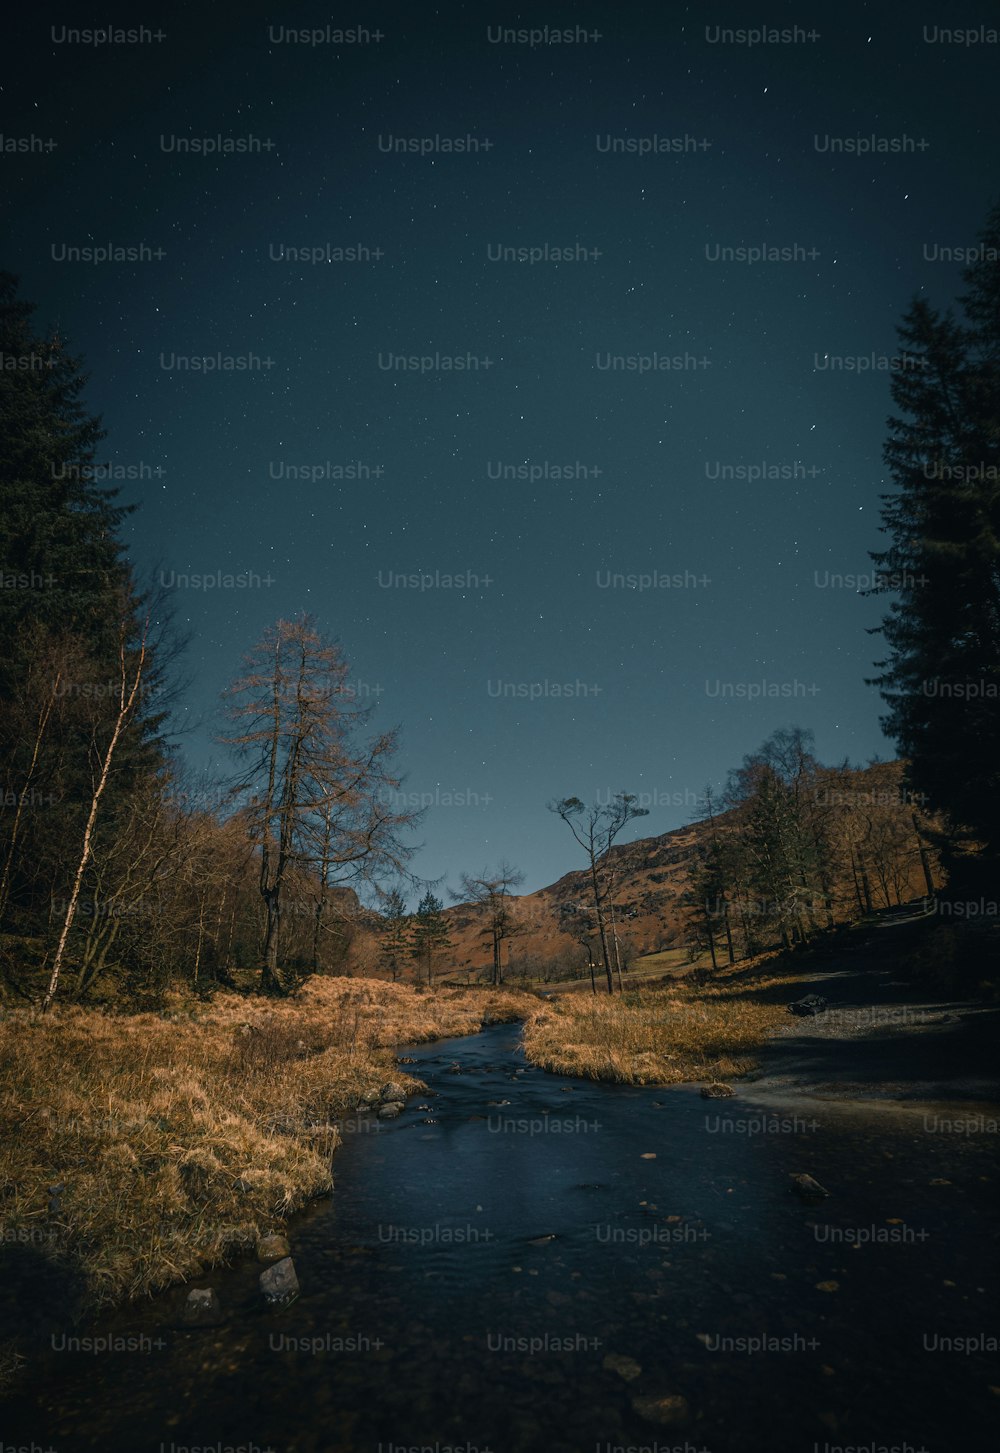 밤하늘 아래 숲을 가로지르는 강